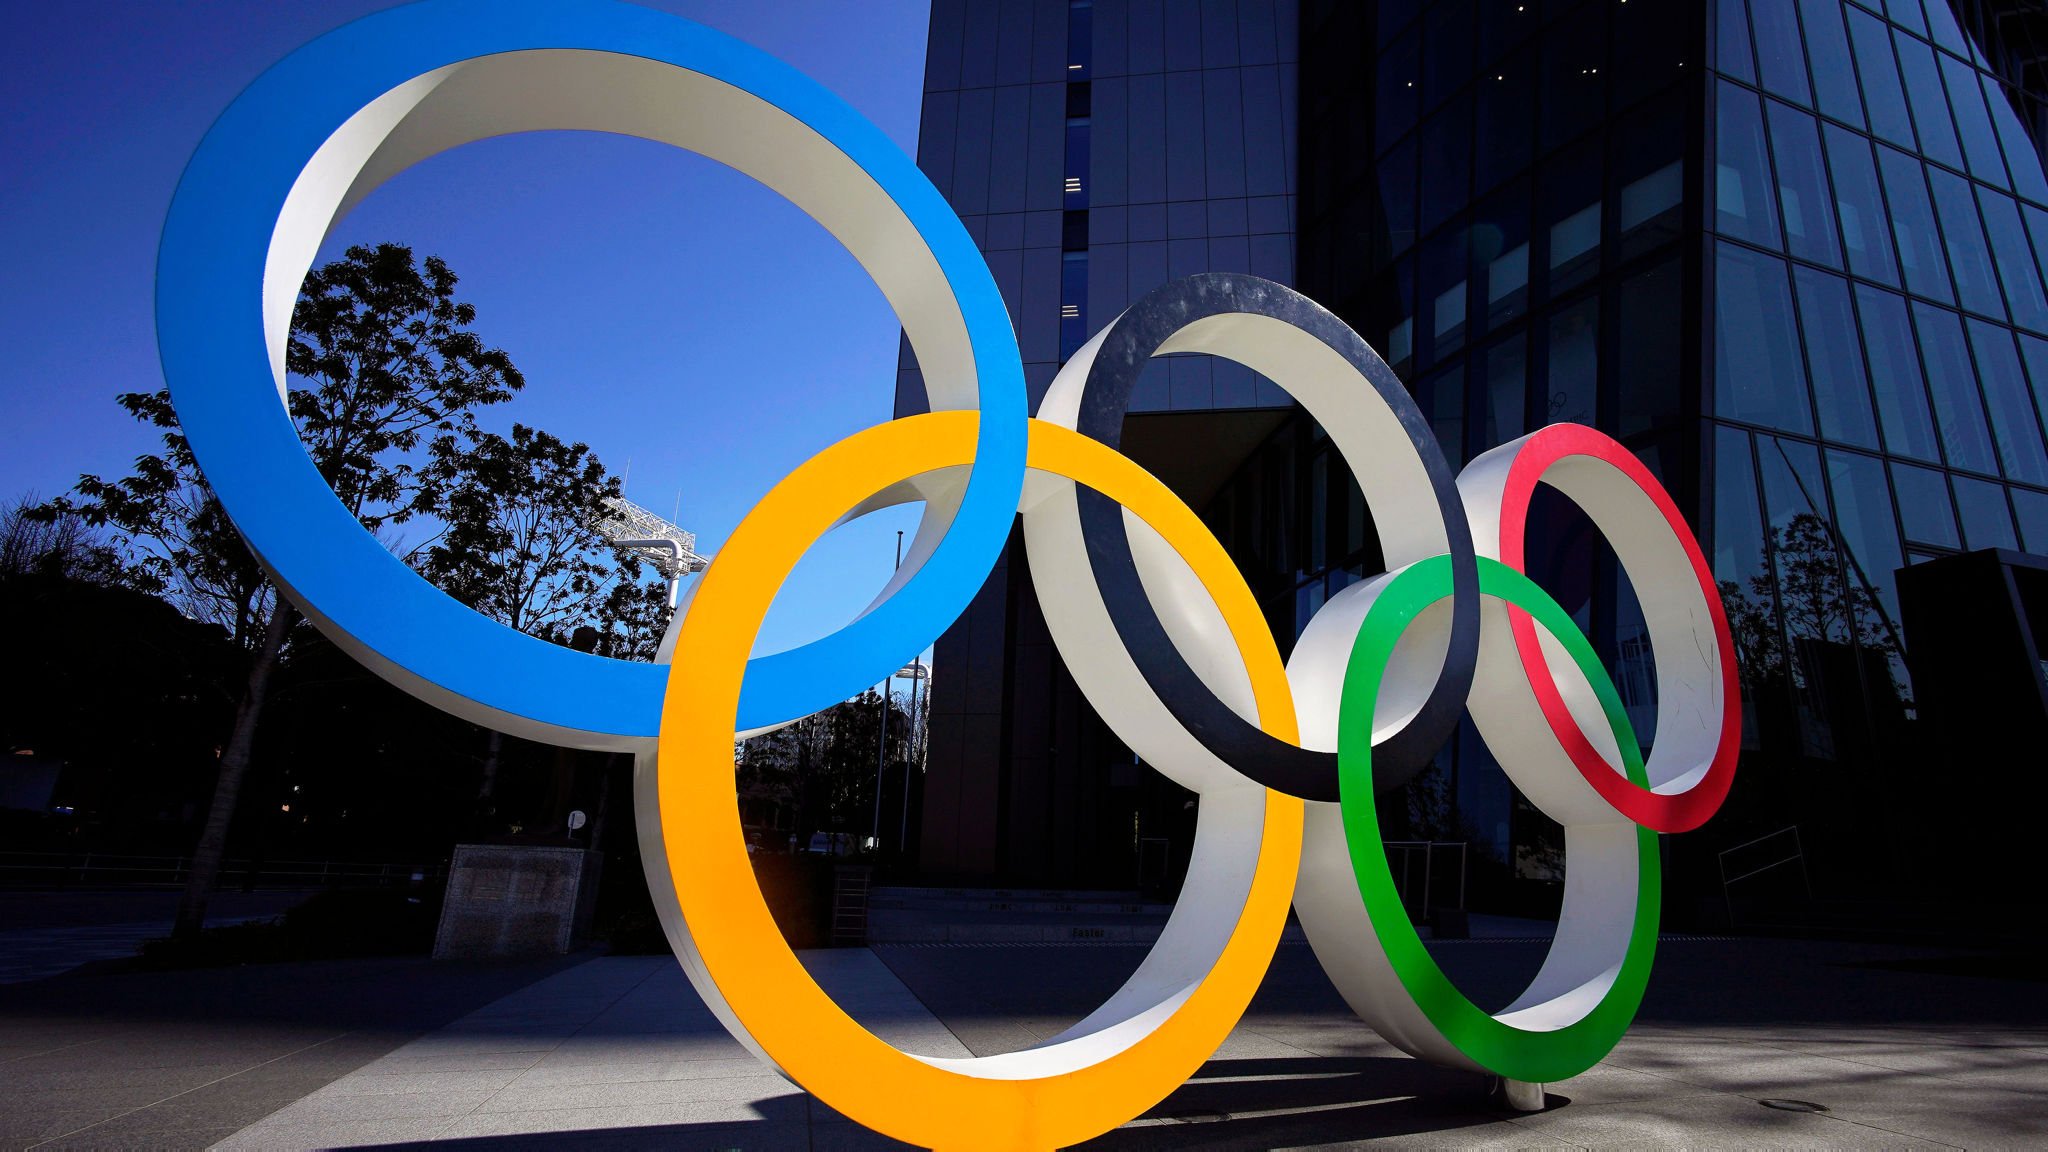 Տոկիոյի ամառային օլիմպիական խաղերի պաշտոնական գործընկերը կոչ է արել չեղյալ հայտարարել մարզահանդեսը 